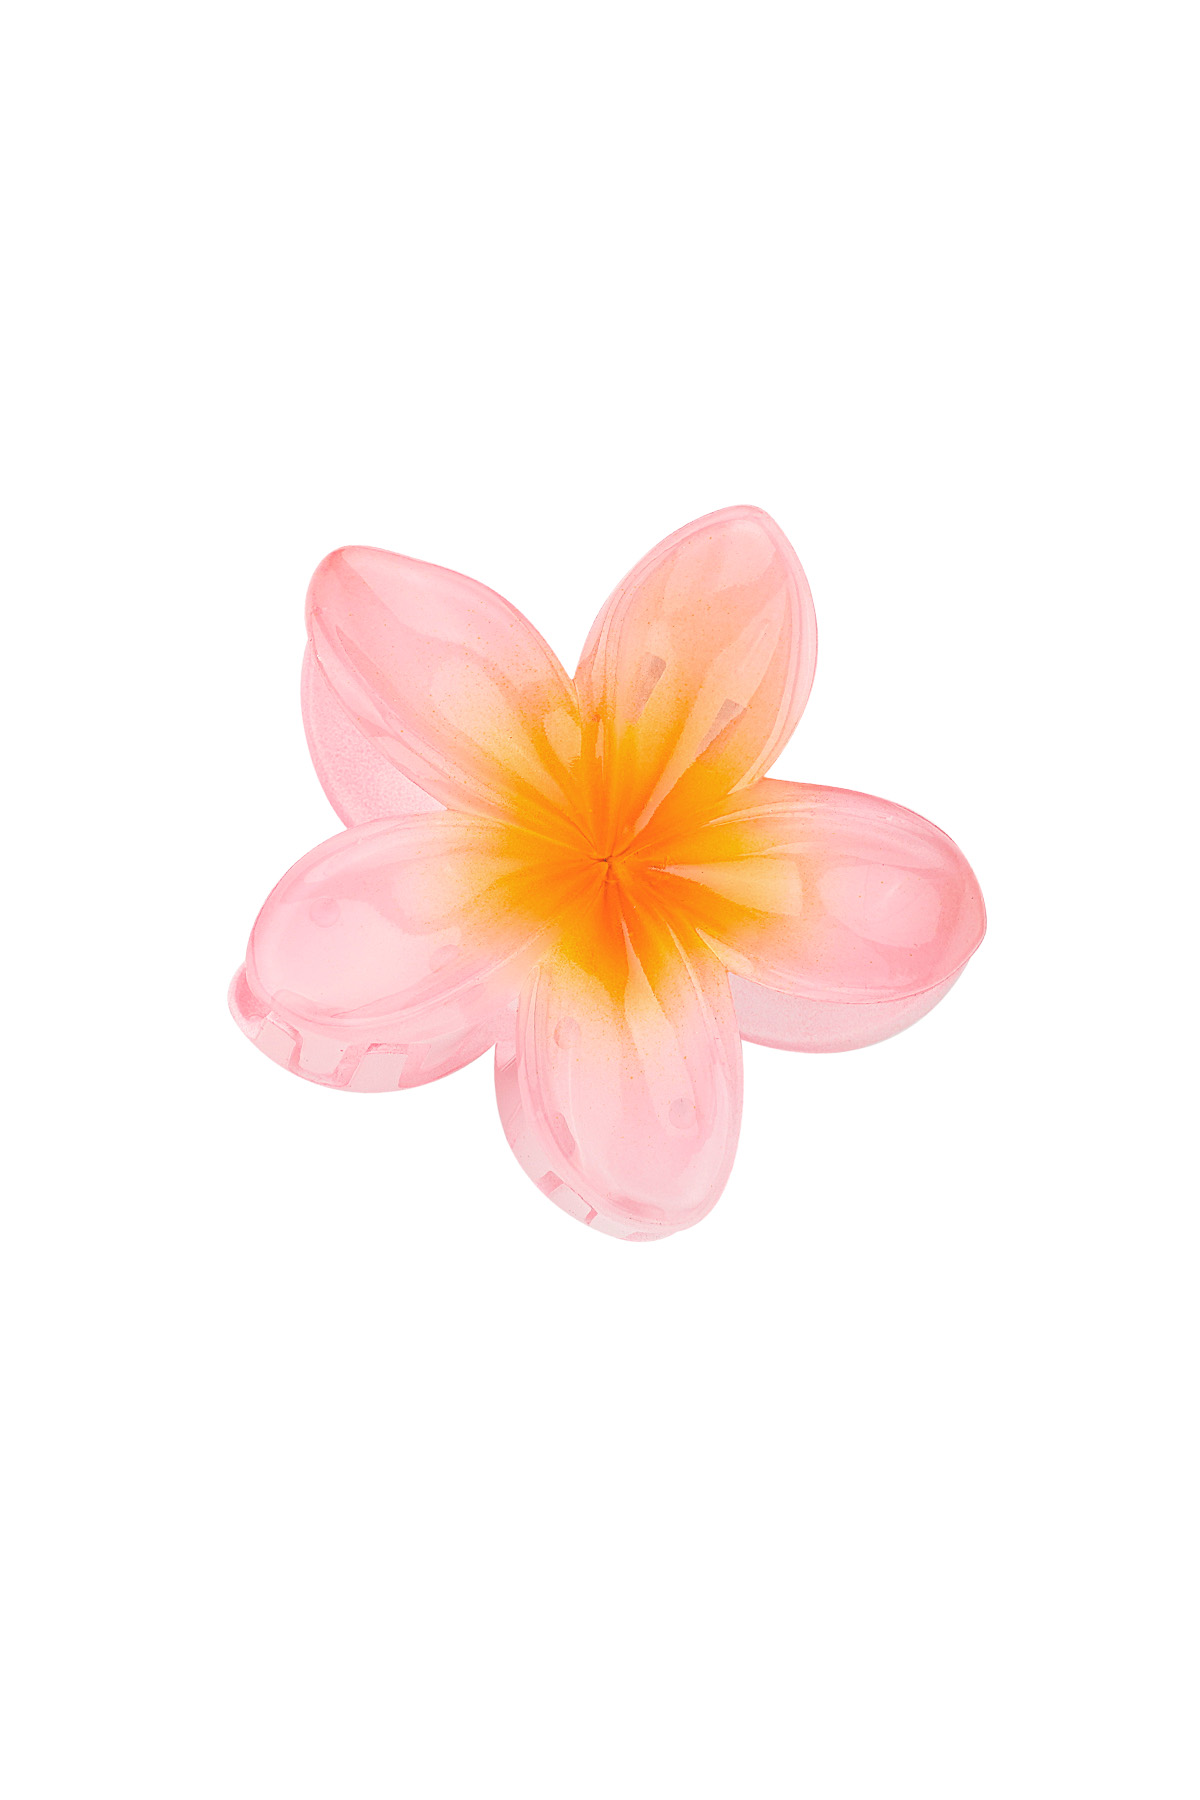 Saç tokası Hawaii çiçeği - açık pembe h5 